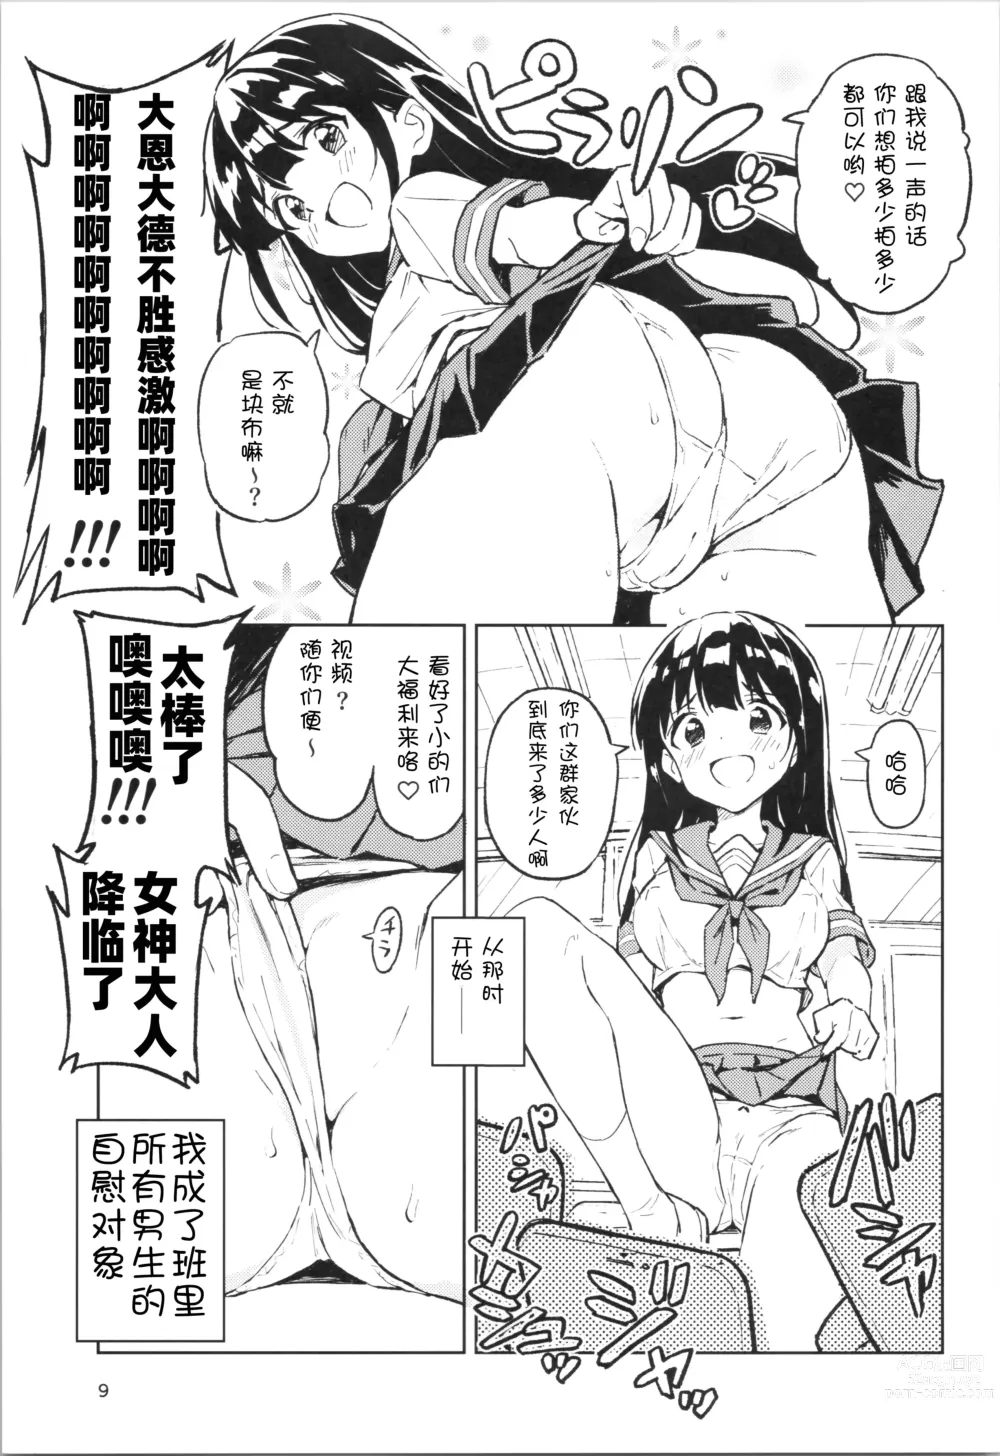 Page 9 of doujinshi 1-kagetsu Ninshin Shinakereba Otoko ni Modoreru Hanashi